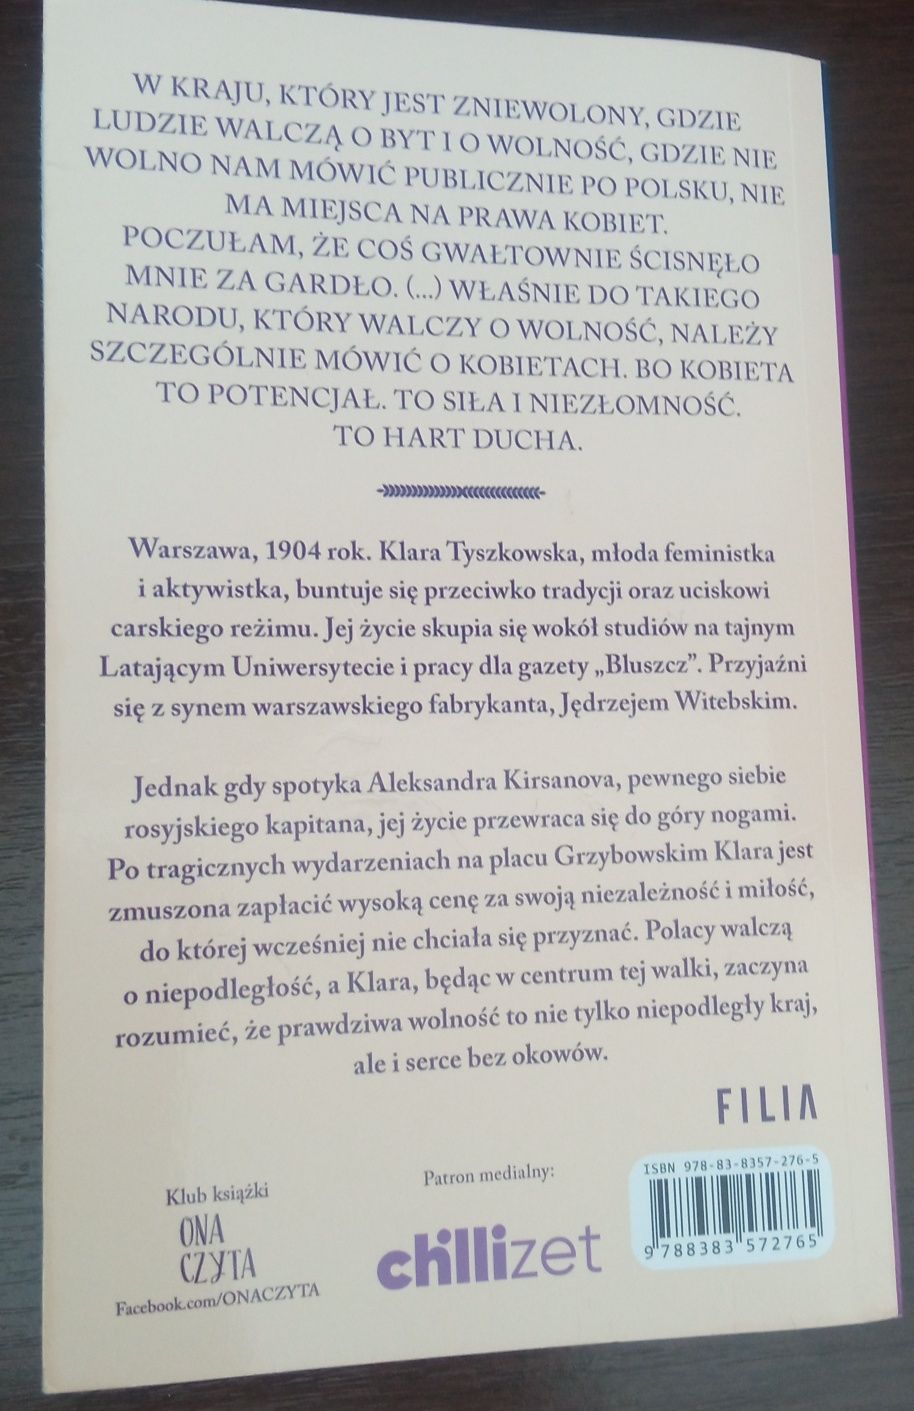 Książka "Cena wolności" Barbara Wysoczańska